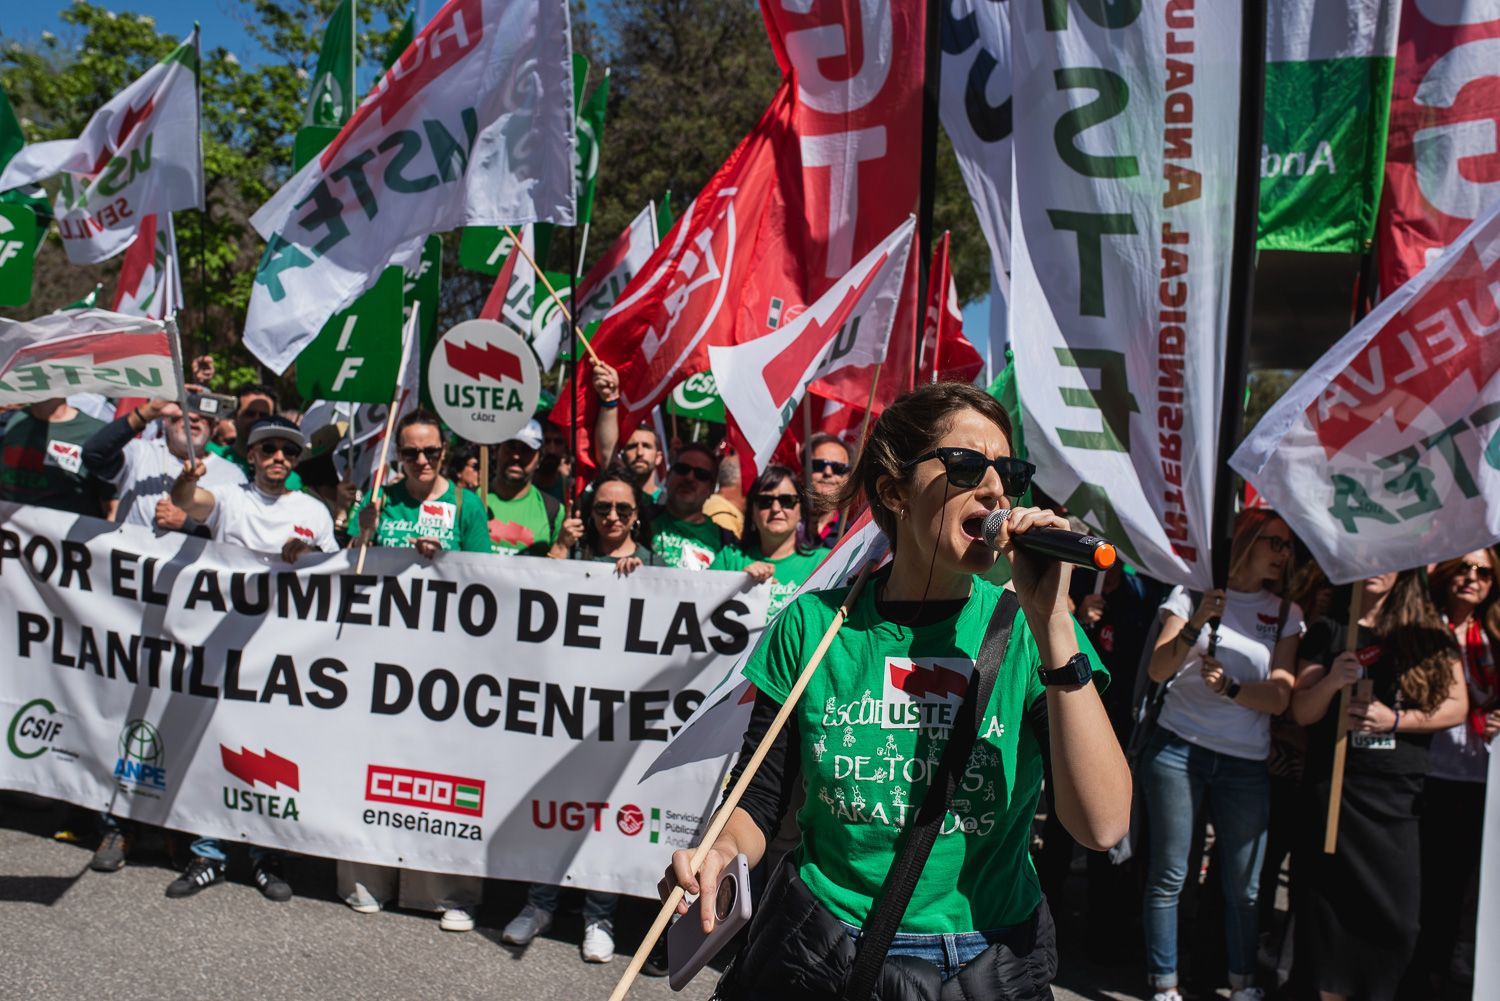 Los sindicatos se han concentrado este martes en Sevilla para reclamar a la Junta negociación para el aumento de las plantillas docentes.